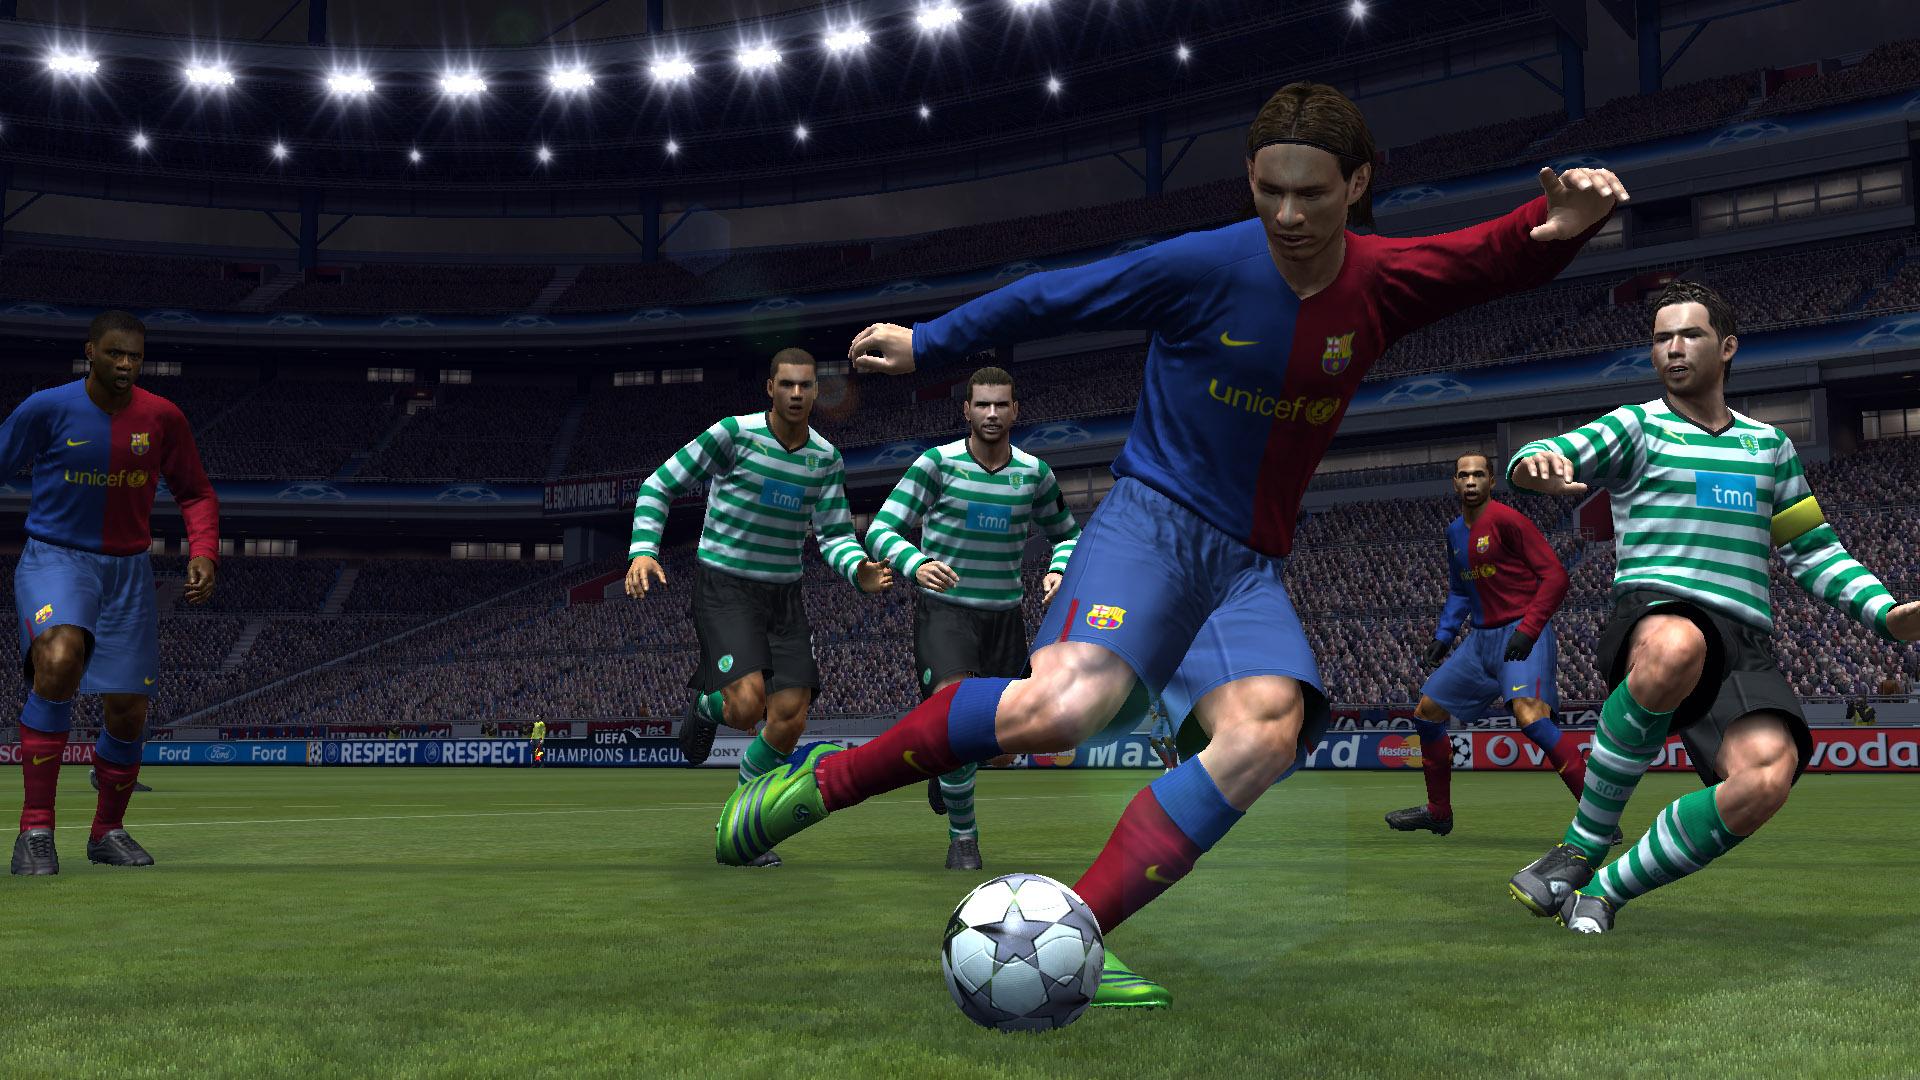 Игры вый. Pro Evolution Soccer 2009. Pro Evolution Soccer 2008. PES 2009 на Xbox 360. Pro Evolution Soccer 2008 ps3.